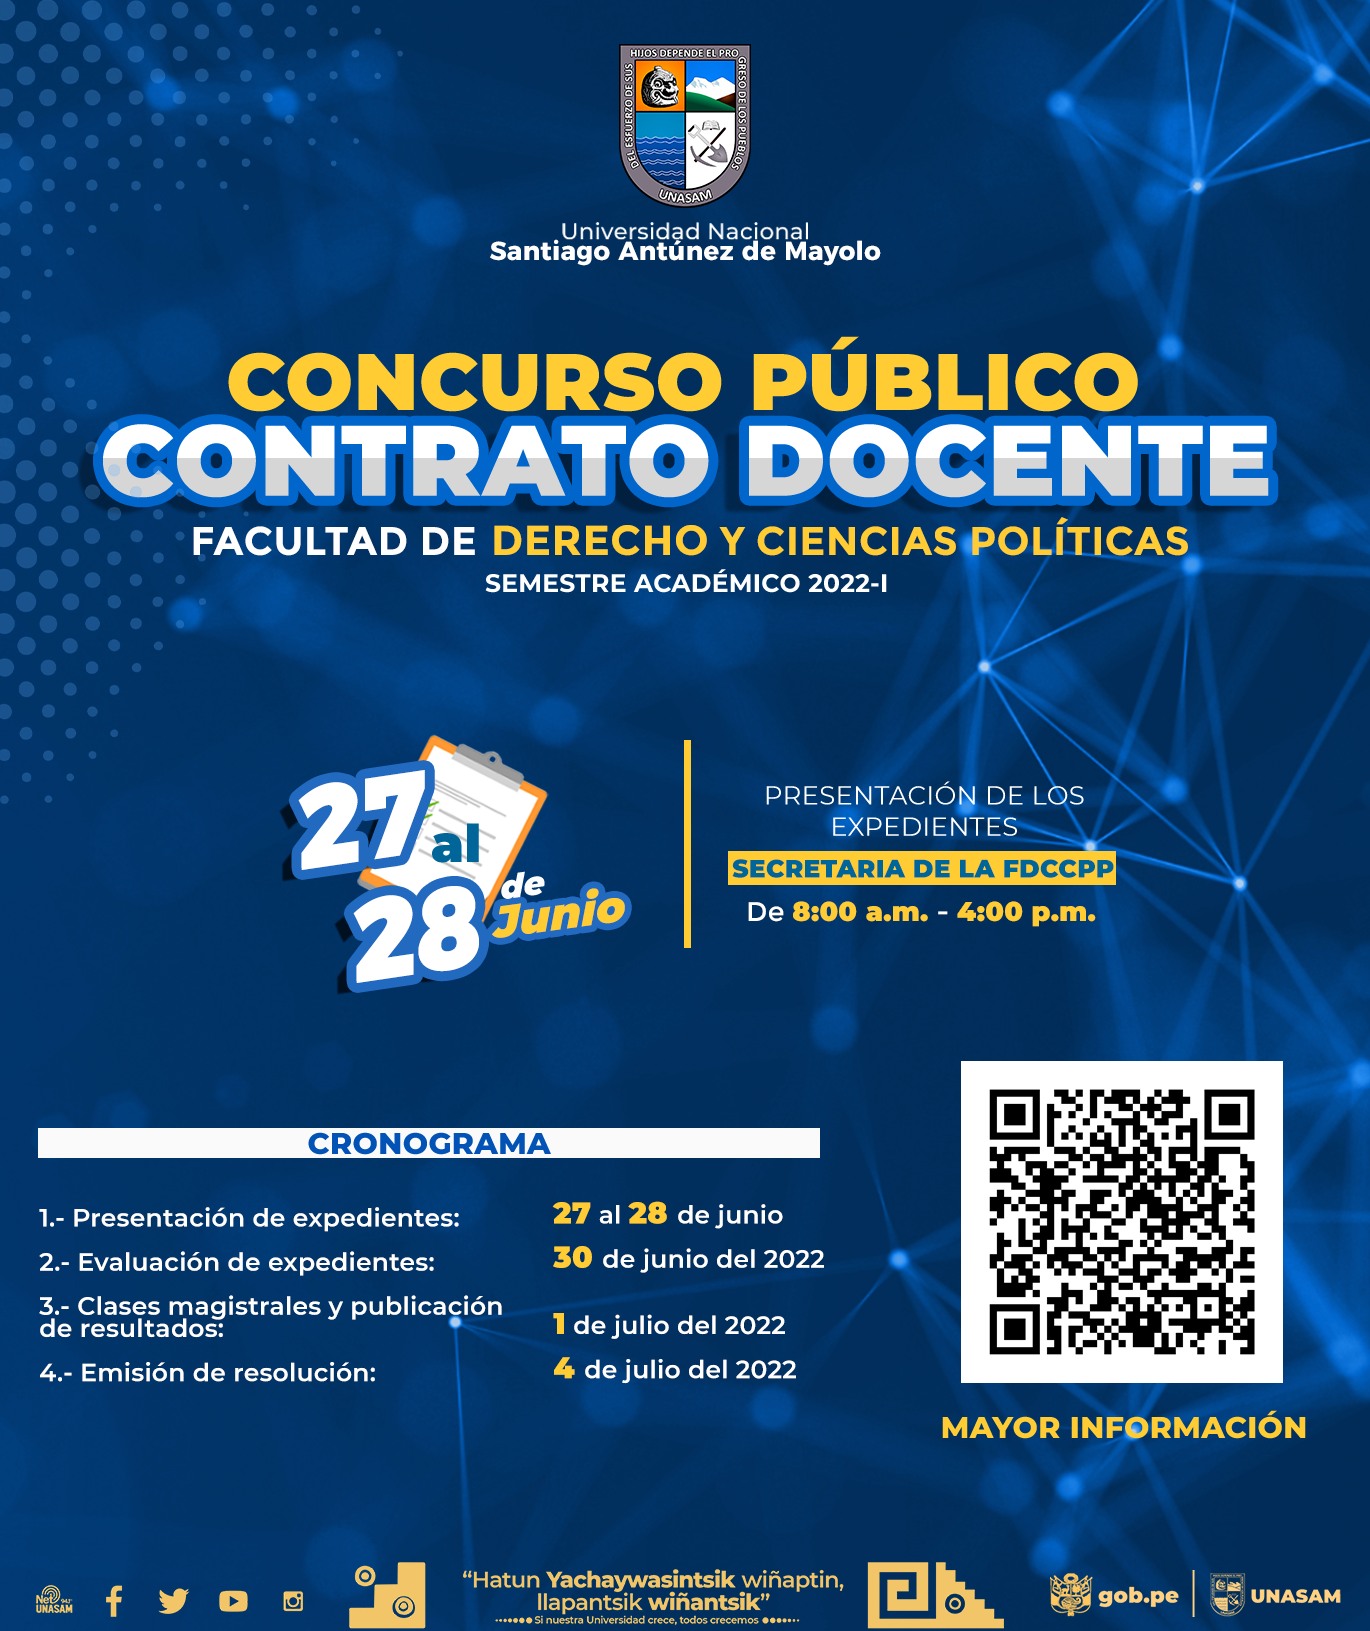  														Convocatoria a concurso público por contrato docente- Facultad de Derecho y Ciencias Políticas (FDCCPP)- correspondiente al semestre 2022-I.
														